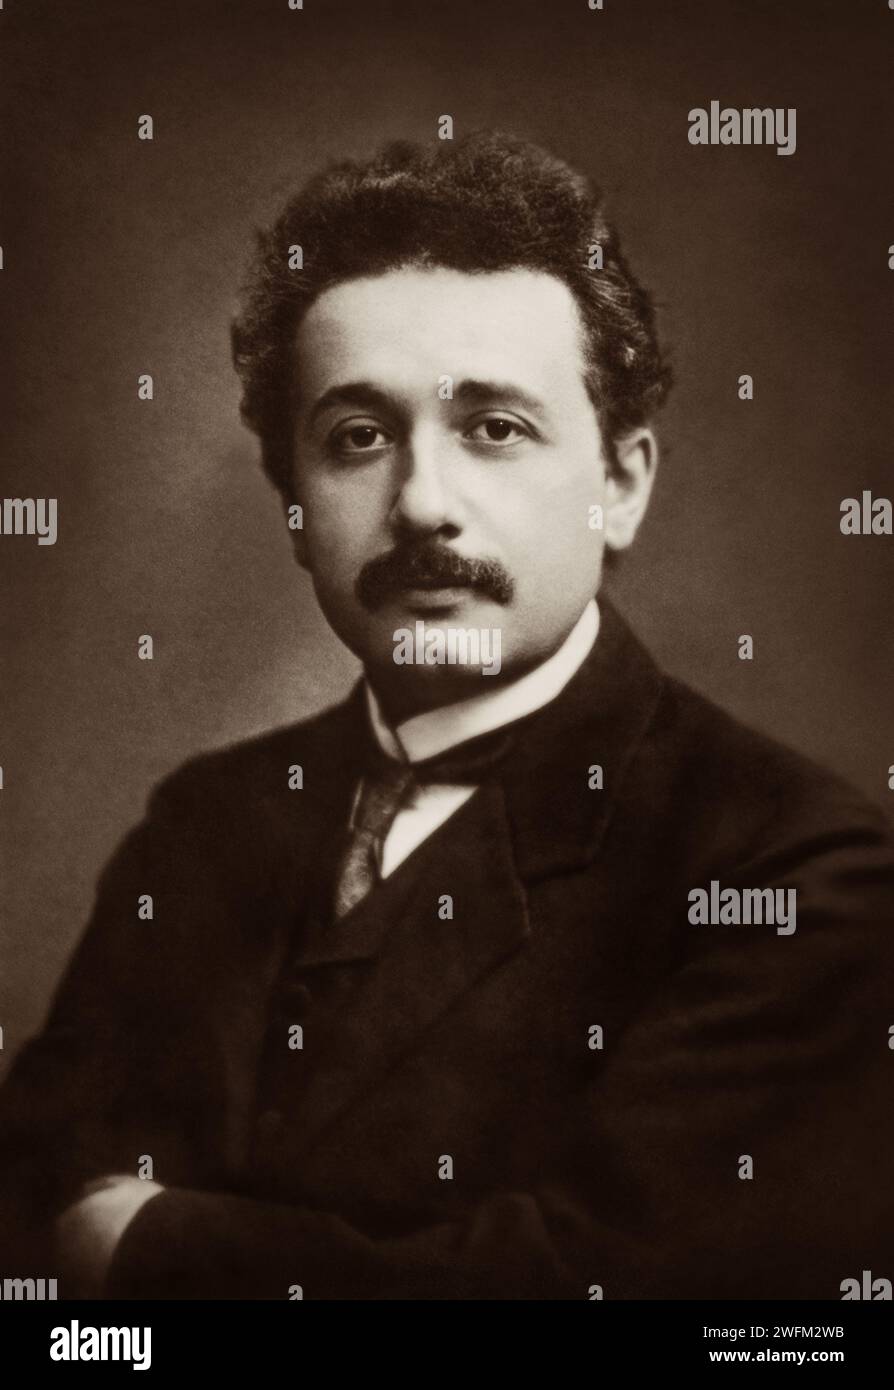 Portrait of Albert Einstein (1879-1955) in 1912. Stock Photo